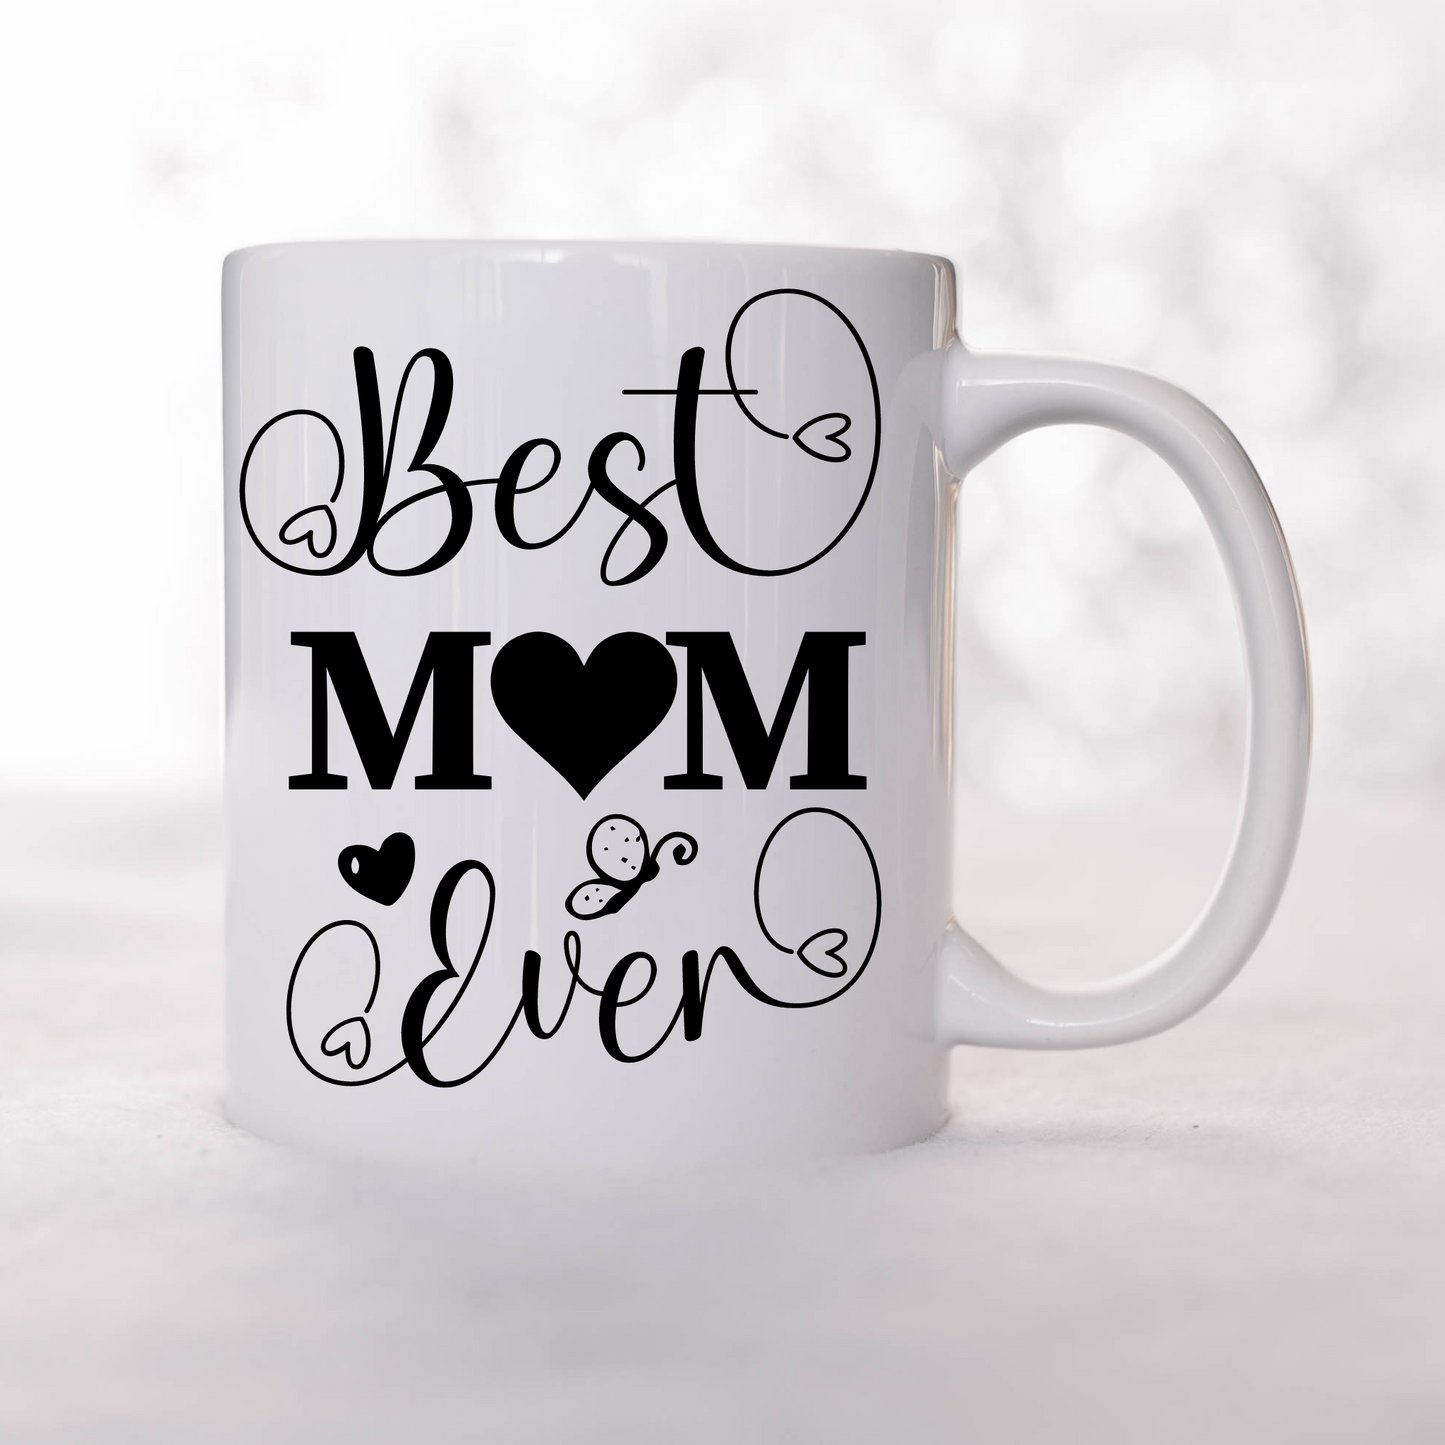 BEST MOM EVER - Mug